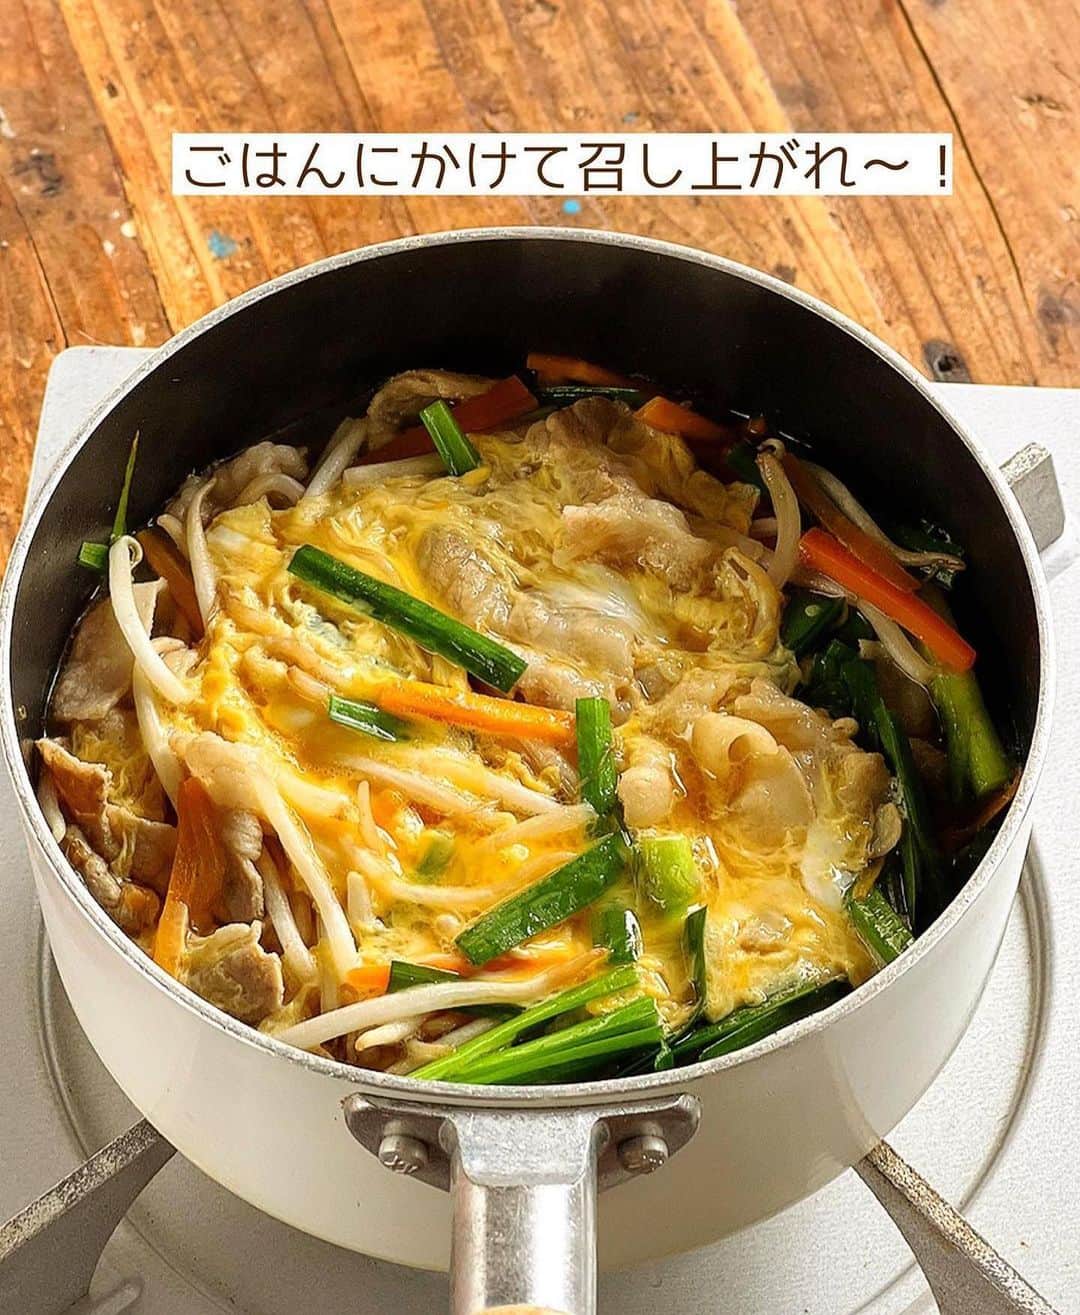 Mizuki【料理ブロガー・簡単レシピ】さんのインスタグラム写真 - (Mizuki【料理ブロガー・簡単レシピ】Instagram)「・韓国風スープごはん🍚 ⁡ ［#レシピ ］ ーーーーーーーーーーーー  豚肉と残り野菜のクッパ ーーーーーーーーーーーー ⁡ ⁡ ⁡ おはようございます☺️ ⁡ 今日ご紹介させていただくのは 韓国風スープかけごはん \ 豚肉と残り野菜のクッパ / (再掲載) ⁡ 野菜をたっぷり加えてヘルシーに やさしい味わいに仕上げました♩ これ1品でバランスよく食べられて 満足感もありますよ〜💕 ⁡ きのこや長ねぎ、乾燥わかめなど 具もアレンジ自在です✨ 韓国風といっても辛くないので よかったらお試しくださいね😋 ⁡ ⁡ ⁡ ⋱⋰ ⋱⋰ ⋱⋰ ⋱⋰ ⋱⋰ ⋱⋰ ⋱⋰ 📍簡単・時短・節約レシピ更新中  Threadsもこちらから▼ @mizuki_31cafe ⁡ 📍謎の暮らし＆変なライブ垢 @mizuki_kurashi ⋱⋰ ⋱⋰ ⋱⋰ ⋱⋰ ⋱⋰ ⋱⋰ ⋱⋰ ⁡ ⁡ ⁡ ＿＿＿＿＿＿＿＿＿＿＿＿＿＿＿＿＿＿＿ 【2人分】 豚バラ薄切り肉...100g ニラ...3本 人参...1/4本 (なくても)もやし...50g 溶き卵...1個分 ごま油...小1 ●水...400ml ●鶏がらスープ...大1 ●醤油・みりん...各大1/2 ごはん・ごま...各適量 ⁡ 1.豚肉とニラは3cm長さに切る。人参は細切りにする。 2.鍋にごま油を中火で熱し、豚肉と人参を炒める。豚肉の色が変わったら●を加え、人参がやわらかくなるまで3〜4分煮る。 3.ニラともやしを加え、再び煮立ったら溶き卵をまわし入れ、ふんわりしたら火を止める。 4.器にごはんを盛り、3をかけてごまを振る。 ￣￣￣￣￣￣￣￣￣￣￣￣￣￣￣￣￣￣￣ ⁡ ⁡ 《ポイント》 ♦︎溶き卵を加えたら、混ぜずに仕上げます♩ ♦︎ごはんは少なめに盛るのがおすすめです♩ ⁡ ⁡ ⁡ ⁡ ⁡ ⁡ ⋱⋰ ⋱⋰ ⋱⋰ ⋱⋰ ⋱⋰ ⋱⋰ ⋱⋰  愛用している調理器具・器など   #楽天ROOMに載せてます ‎𐩢𐩺  (ハイライトから飛べます🕊️) ⋱⋰ ⋱⋰ ⋱⋰ ⋱⋰ ⋱⋰ ⋱⋰ ⋱⋰ ⁡ ⁡ ⁡ ⁡ ⁡ ✼••┈┈┈┈┈••✼••┈┈┈┈┈••✼ 今日のごはんこれに決まり！ ‎𓊆#Mizukiのレシピノート 500品𓊇 ✼••┈┈┈┈┈••✼••┈┈┈┈┈••✼ ⁡ ˗ˏˋ おかげさまで25万部突破 ˎˊ˗ 料理レシピ本大賞準大賞を受賞しました✨ ⁡ 6000点の中からレシピを厳選し まさかの【500レシピ掲載】 肉や魚のメインおかずはもちろん 副菜、丼、麺、スープ、お菓子 ハレの日のレシピ、鍋のレシピまで 全てこの一冊で完結 𓌉◯𓇋 (全国の書店・ネット書店で発売中) ⁡ ⁡ ⁡ ⁡ ⁡ #クッパ  #スープ  #スープレシピ #卵料理 #もやしレシピ #スープかけごはん #韓国料理 #韓国グルメ #節約料理  #簡単料理  #時短料理 #mizukiレシピ  #時短レシピ #節約レシピ #簡単レシピ」8月19日 6時59分 - mizuki_31cafe